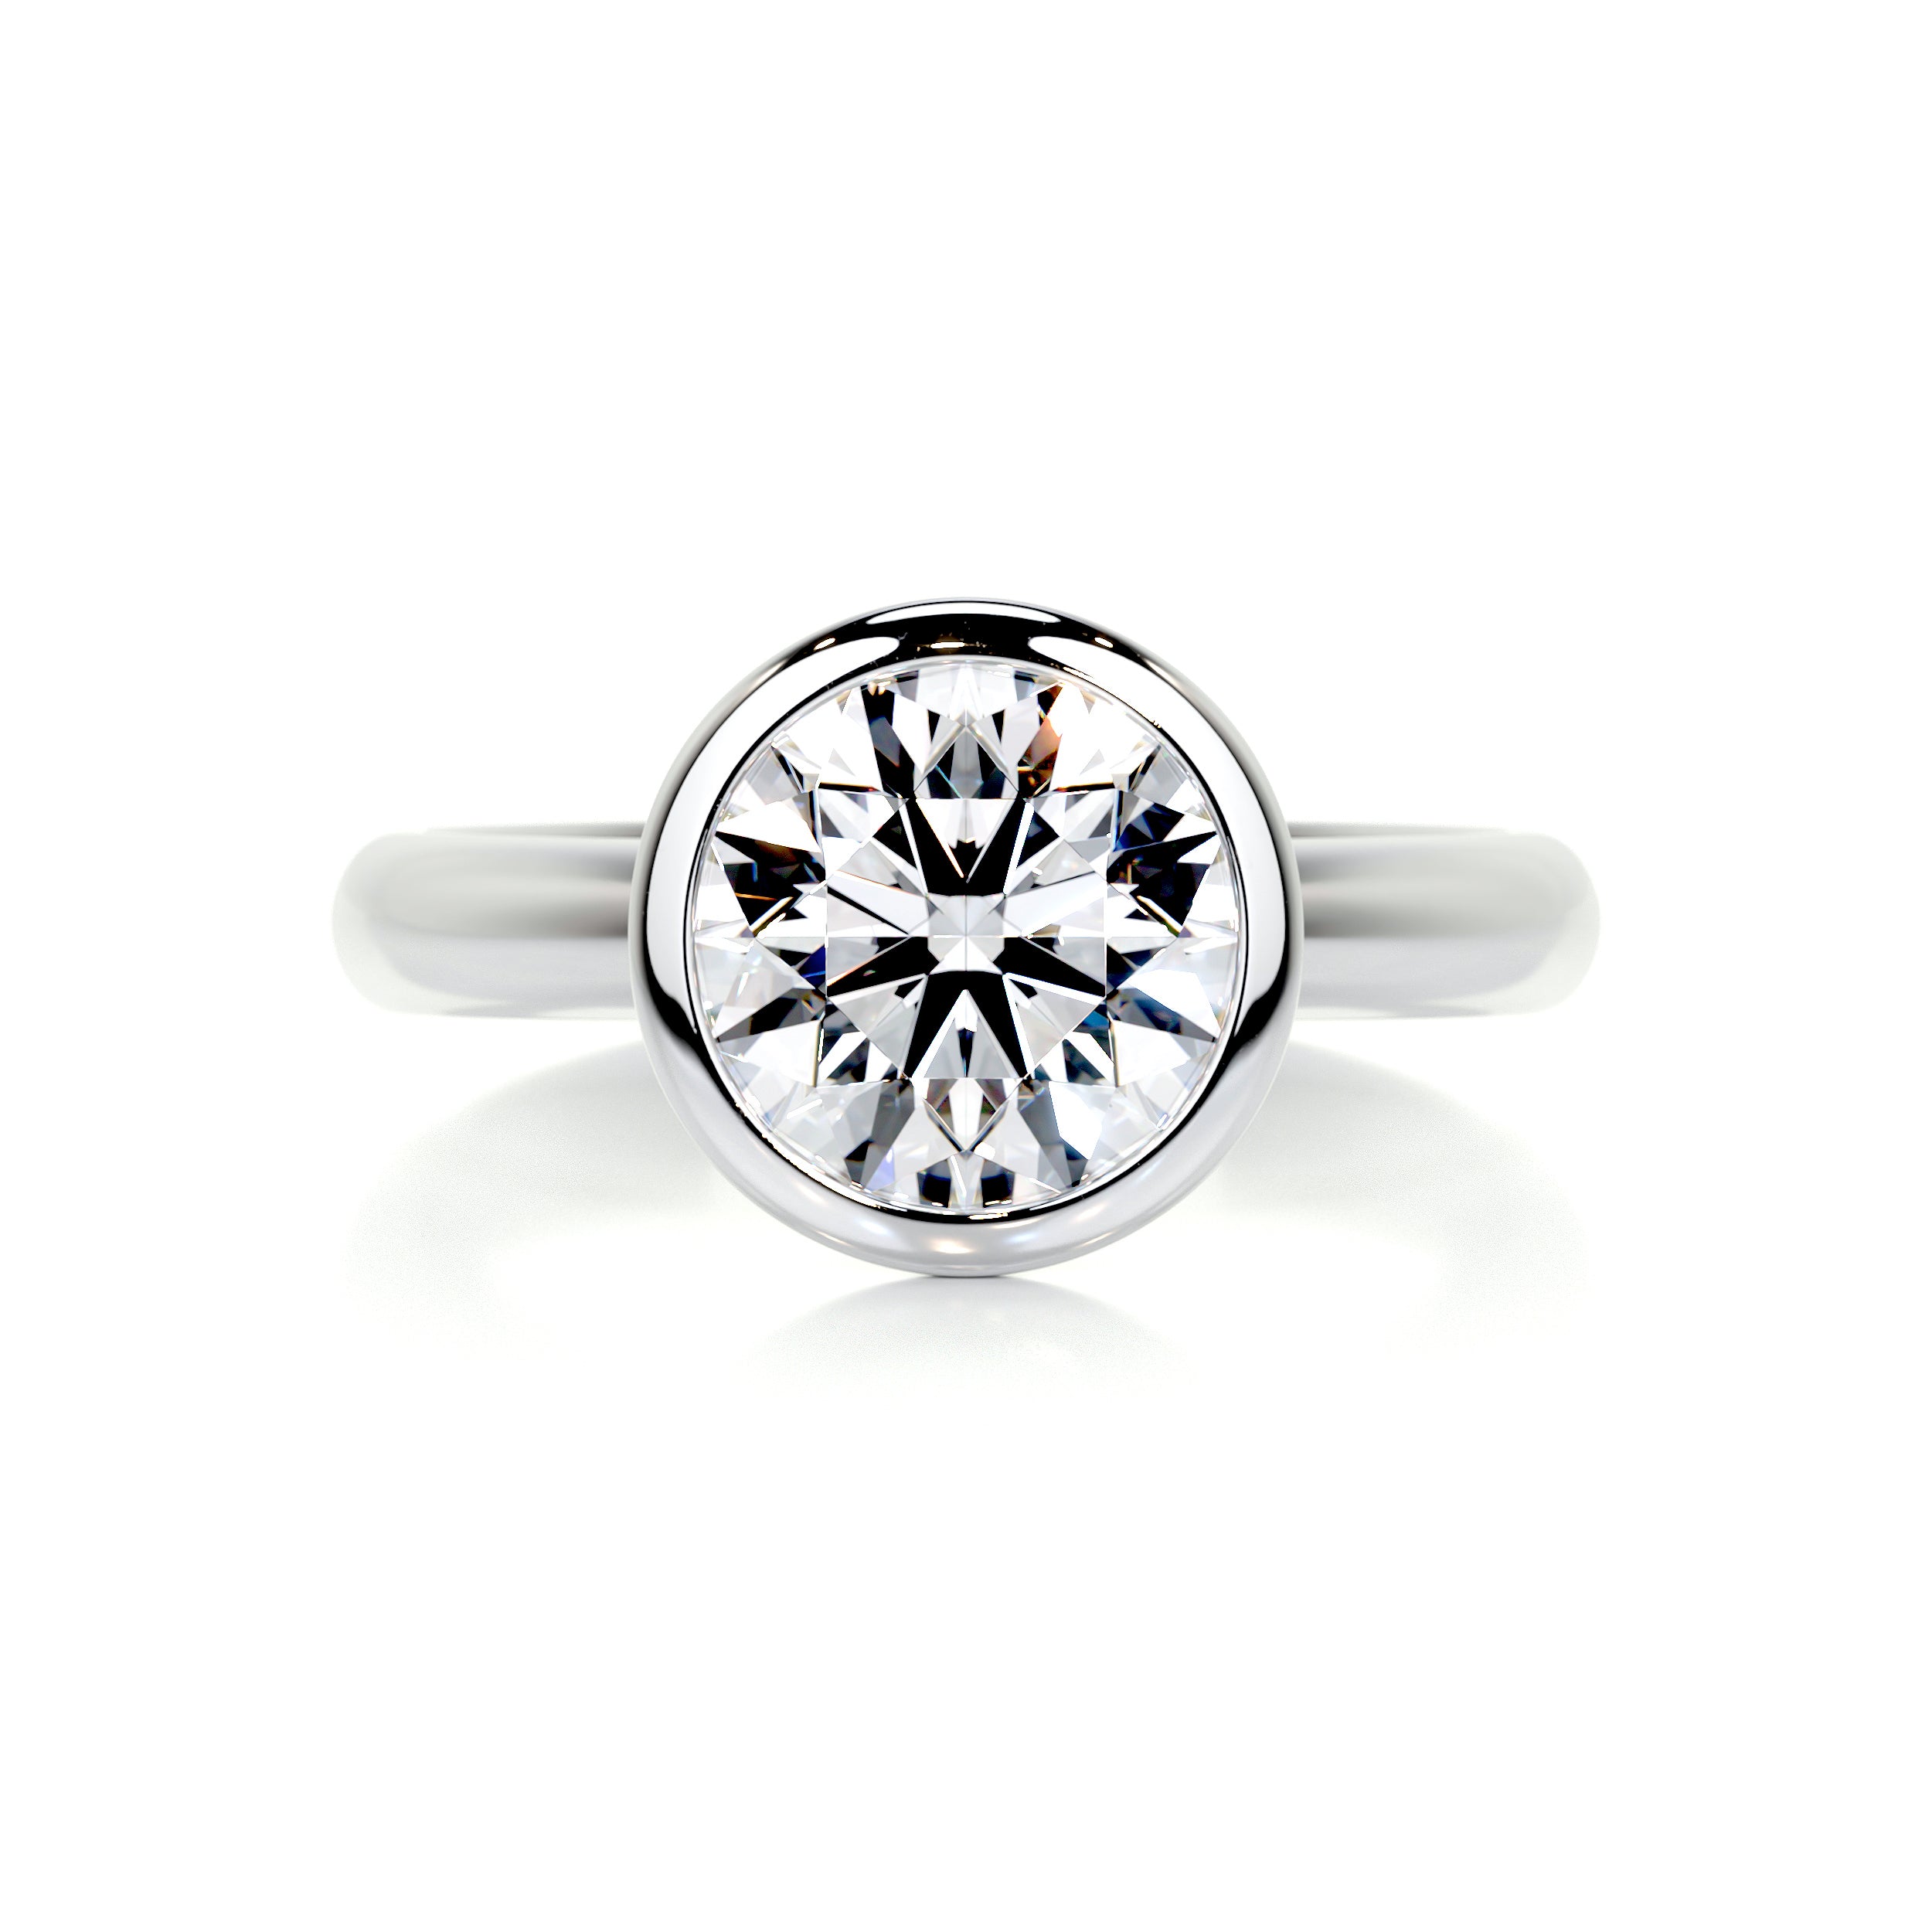 Kaylee Diamond Engagement Ring   (3 Carat) -18K White Gold